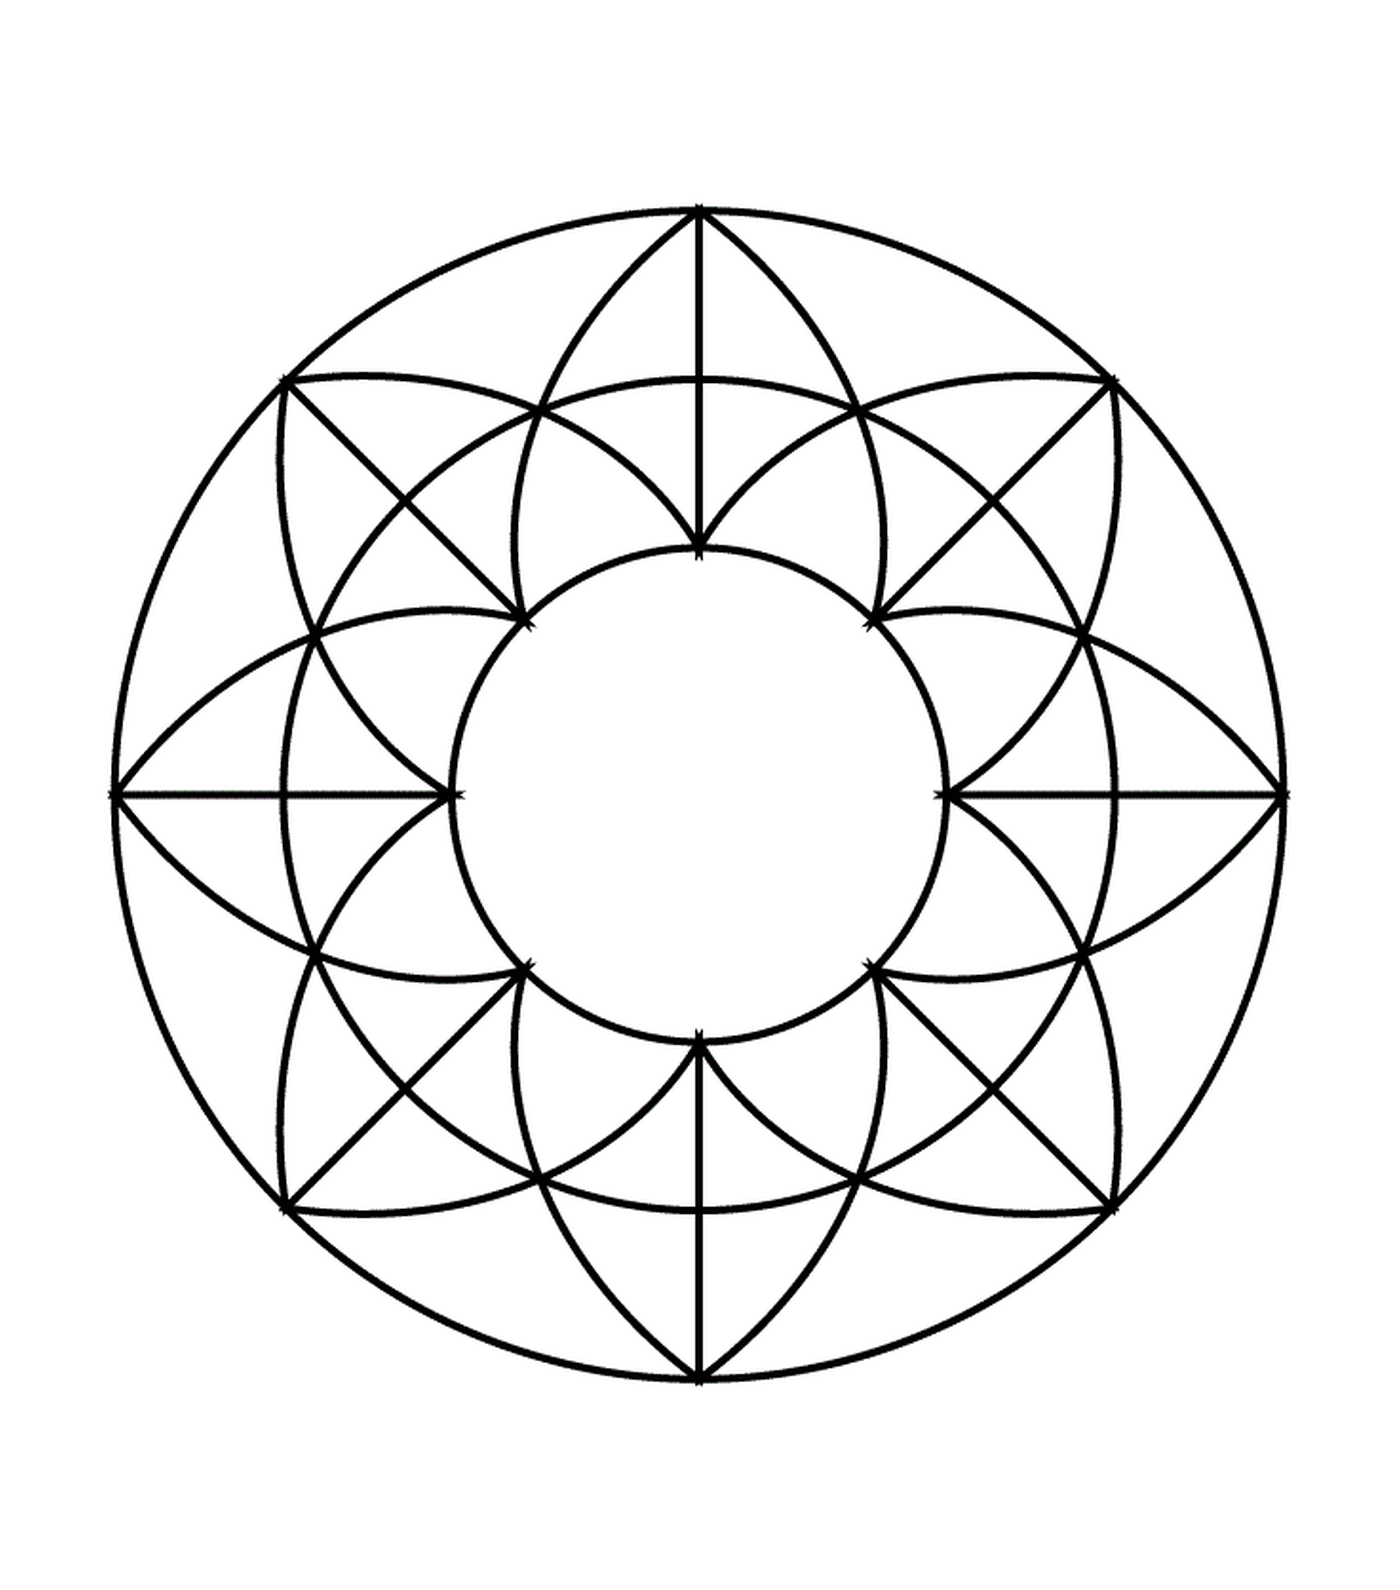  Ein Kreis mit einem geometrischen Muster im Inneren 